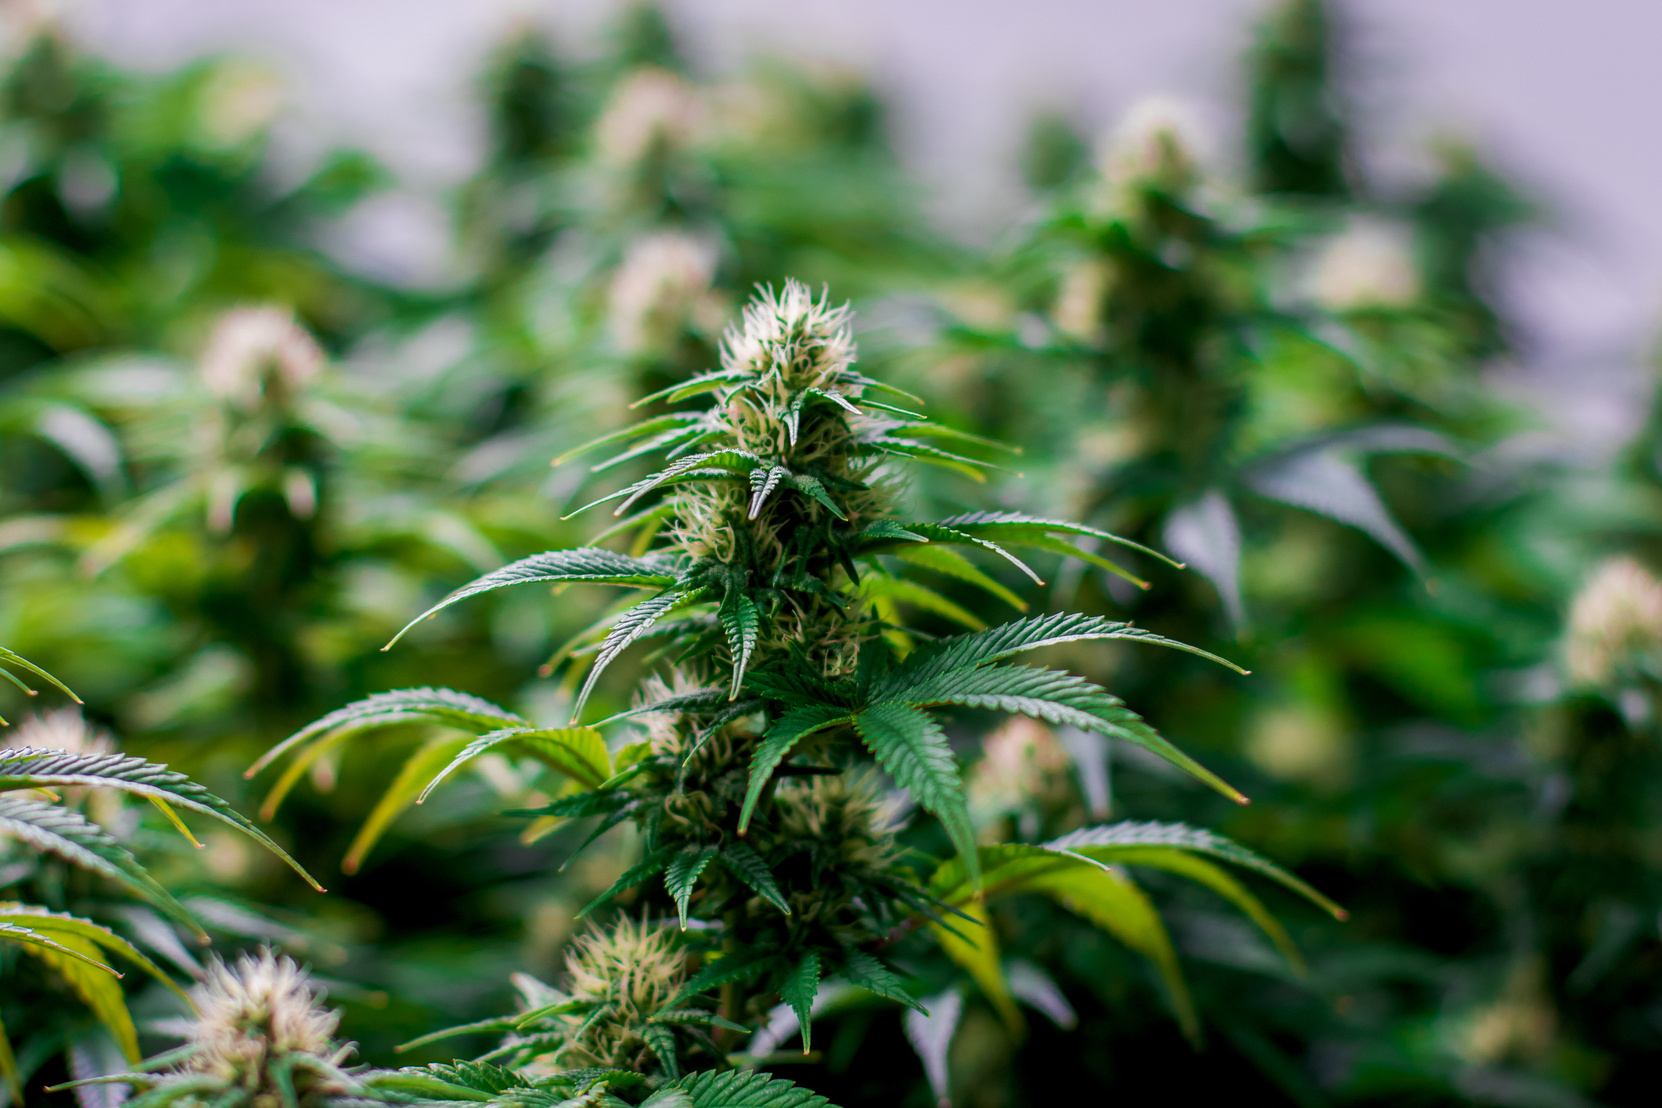 Maturing indoor cannabis plant